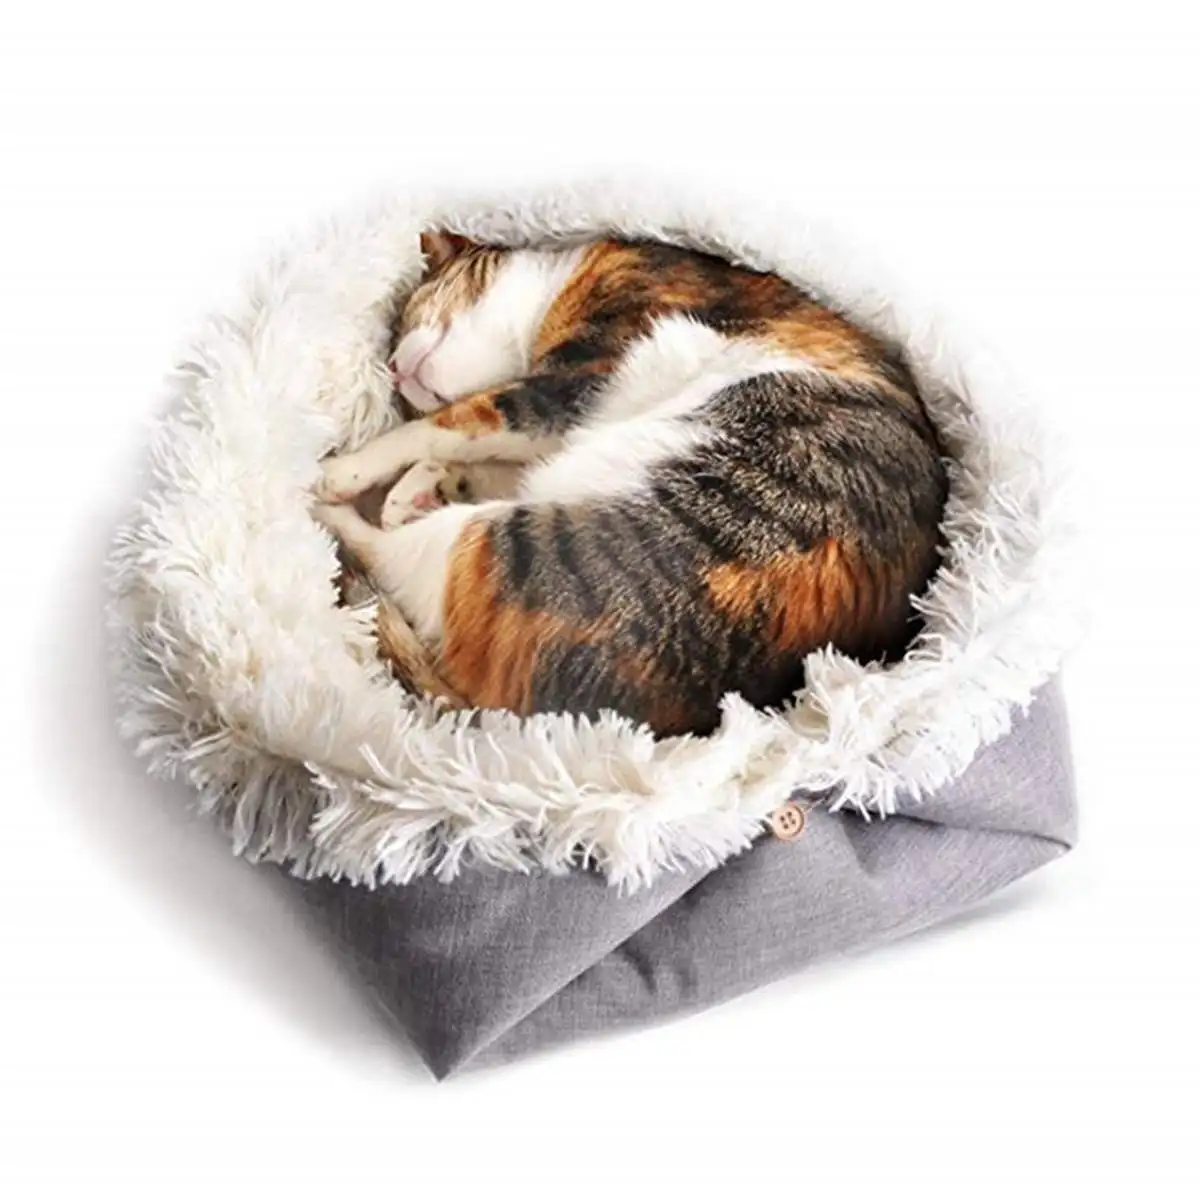 Складной коврик для питомца кровать подушка одеяло для собаки для питомца гнездо для кошки домик для щенка будка для собак кошка грелка для собаки домик для питомца гнездо для дивана одеяло